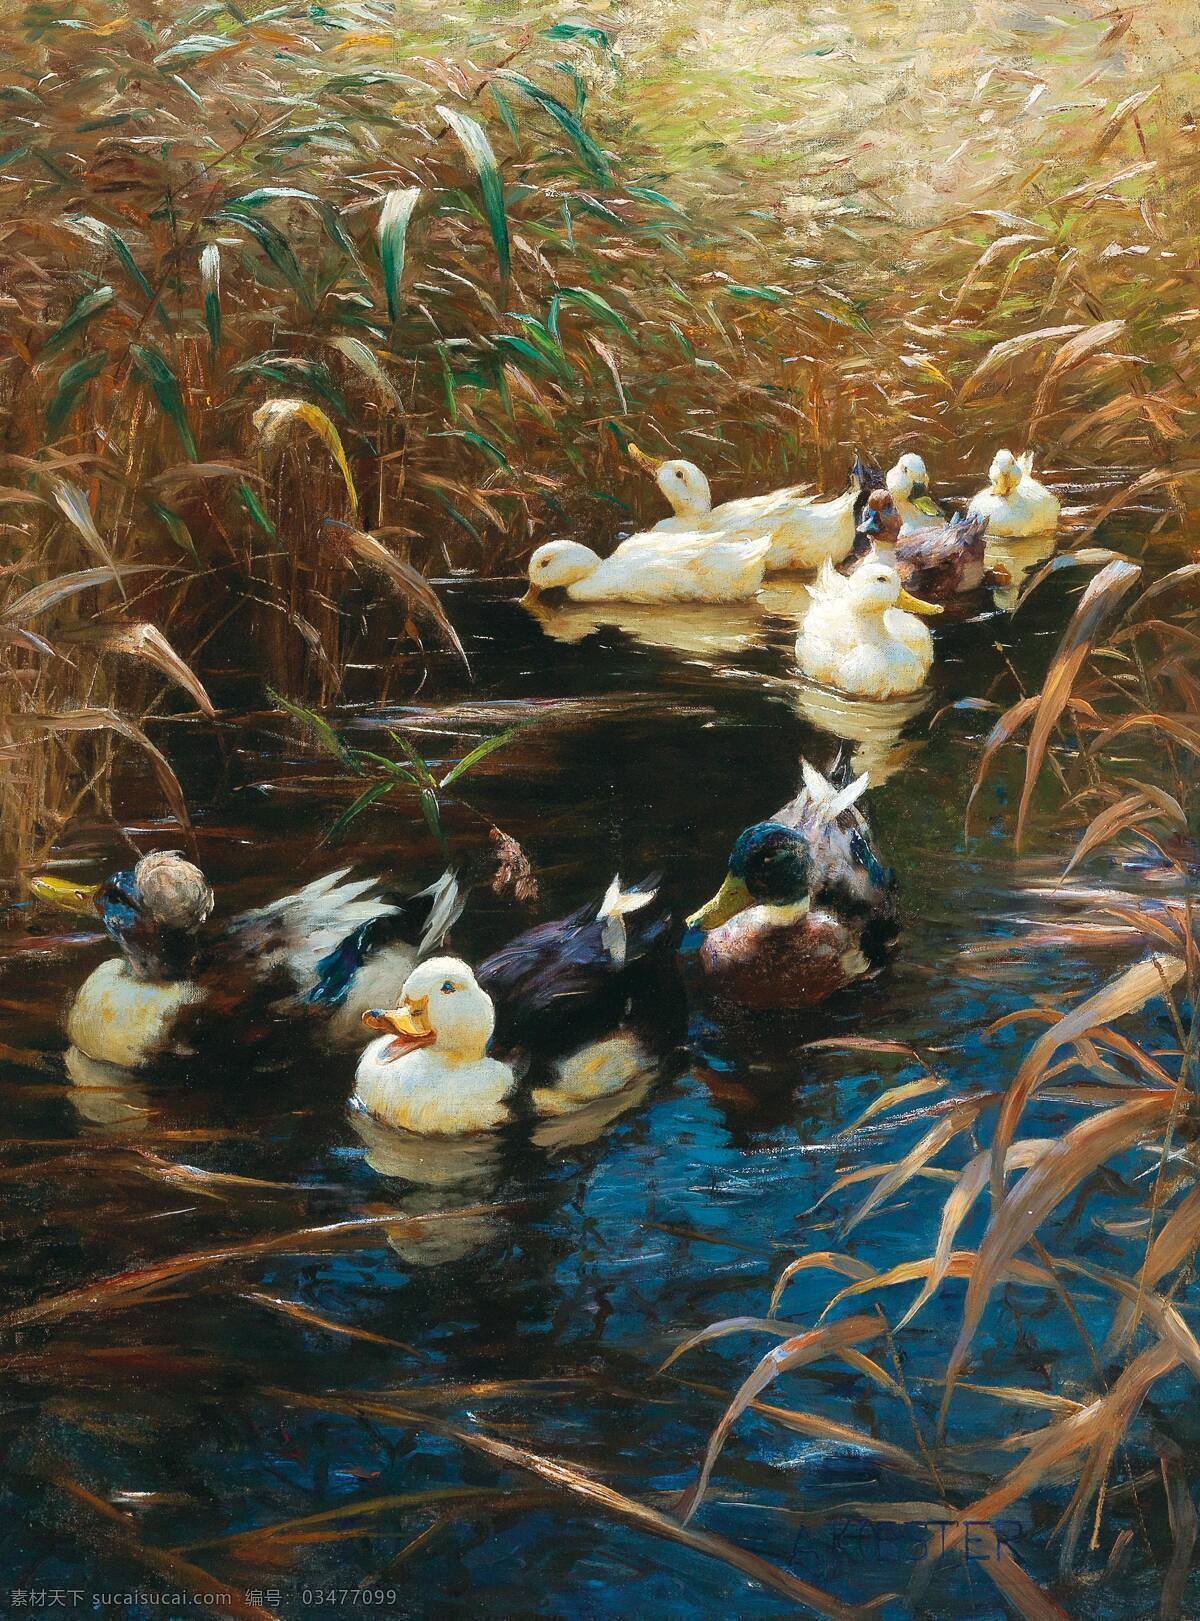 亚历山大 科斯特 作品 德国画家 池塘 芦苇 群鸭 戏水 19世纪油画 油画 文化艺术 绘画书法